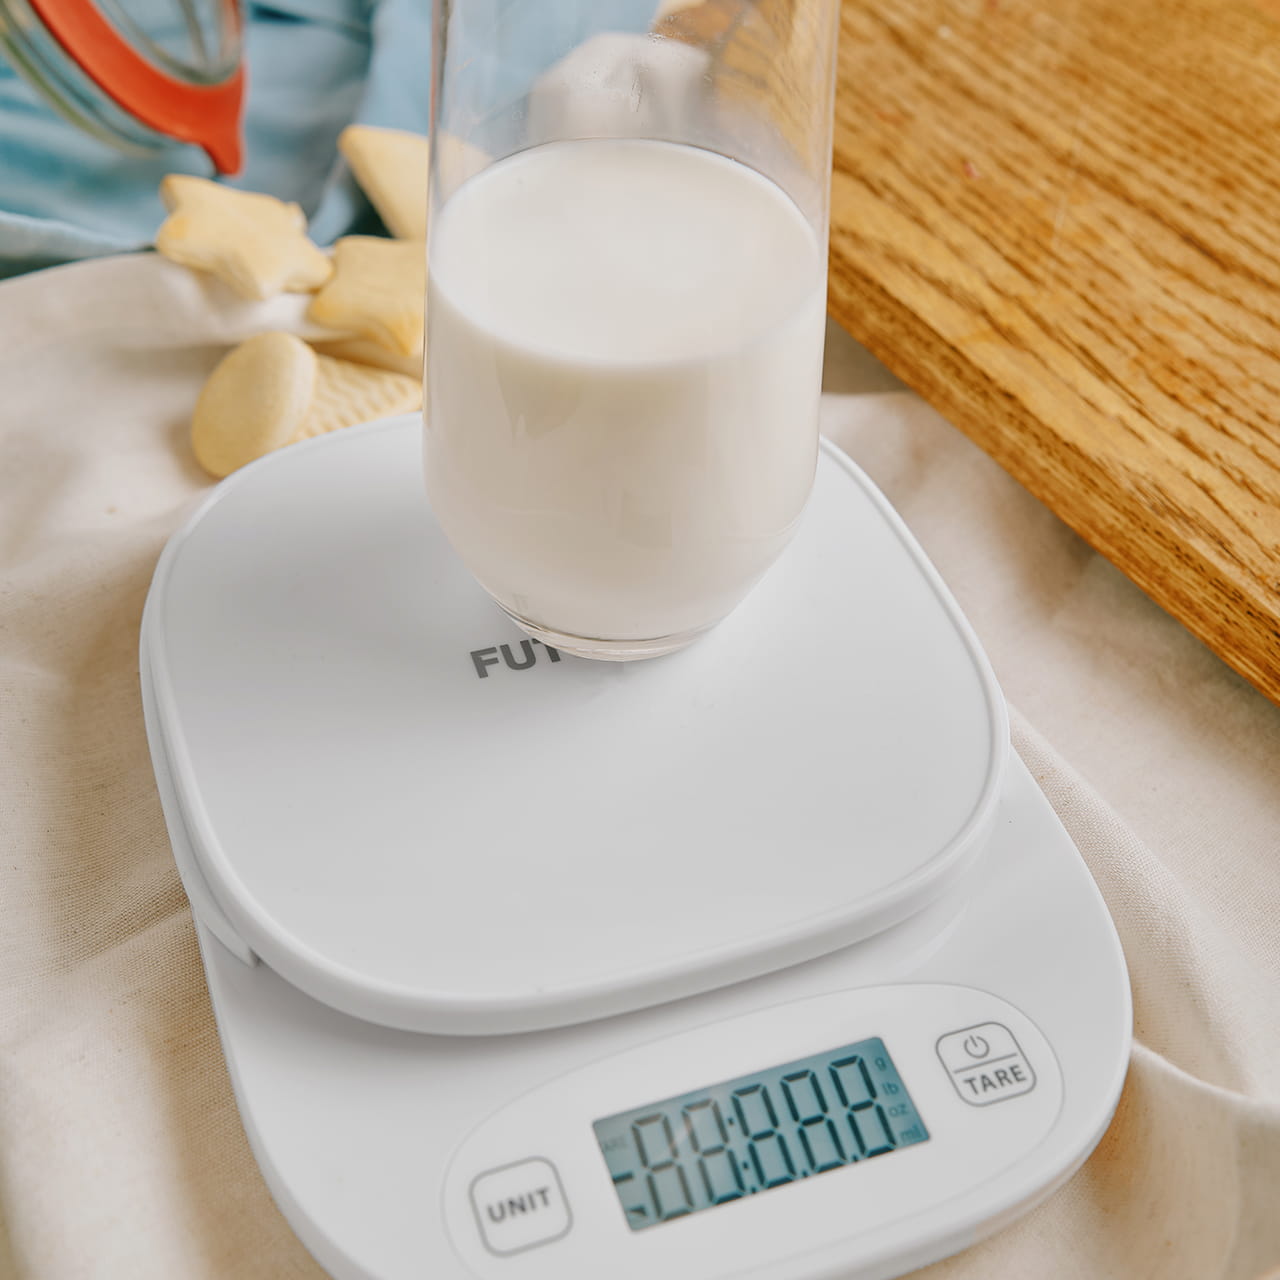 Функция тарирования позволяет в любой момент обнулить вес на дисплее, что особенно удобно для взвешивания продуктов без учёта тары